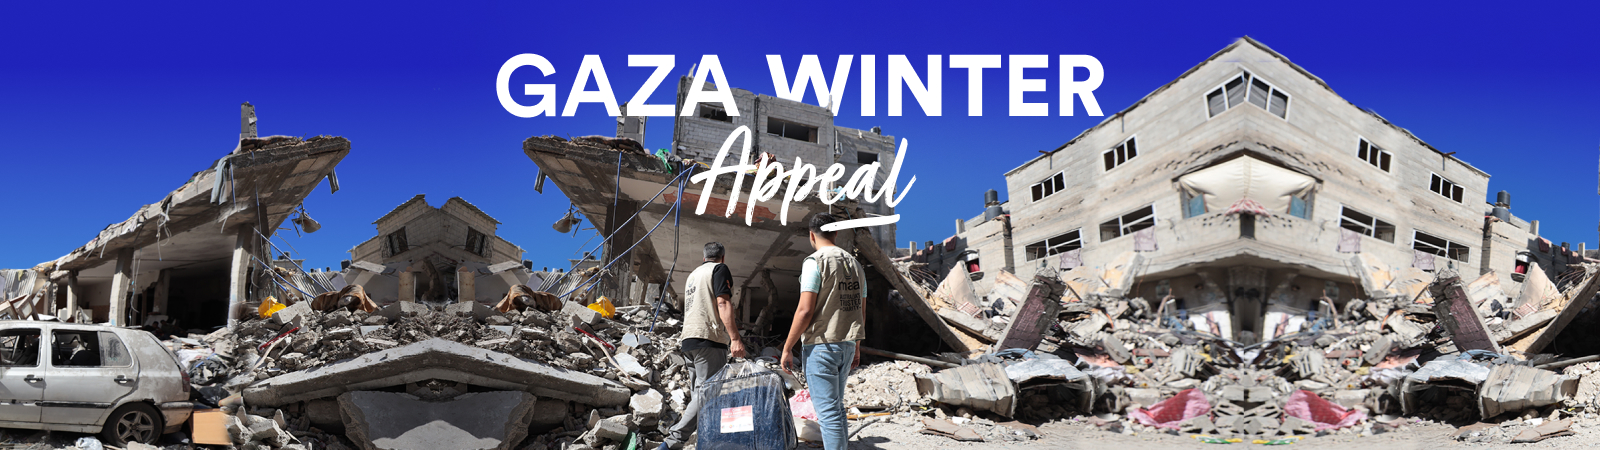 Gaza Winter Appeal